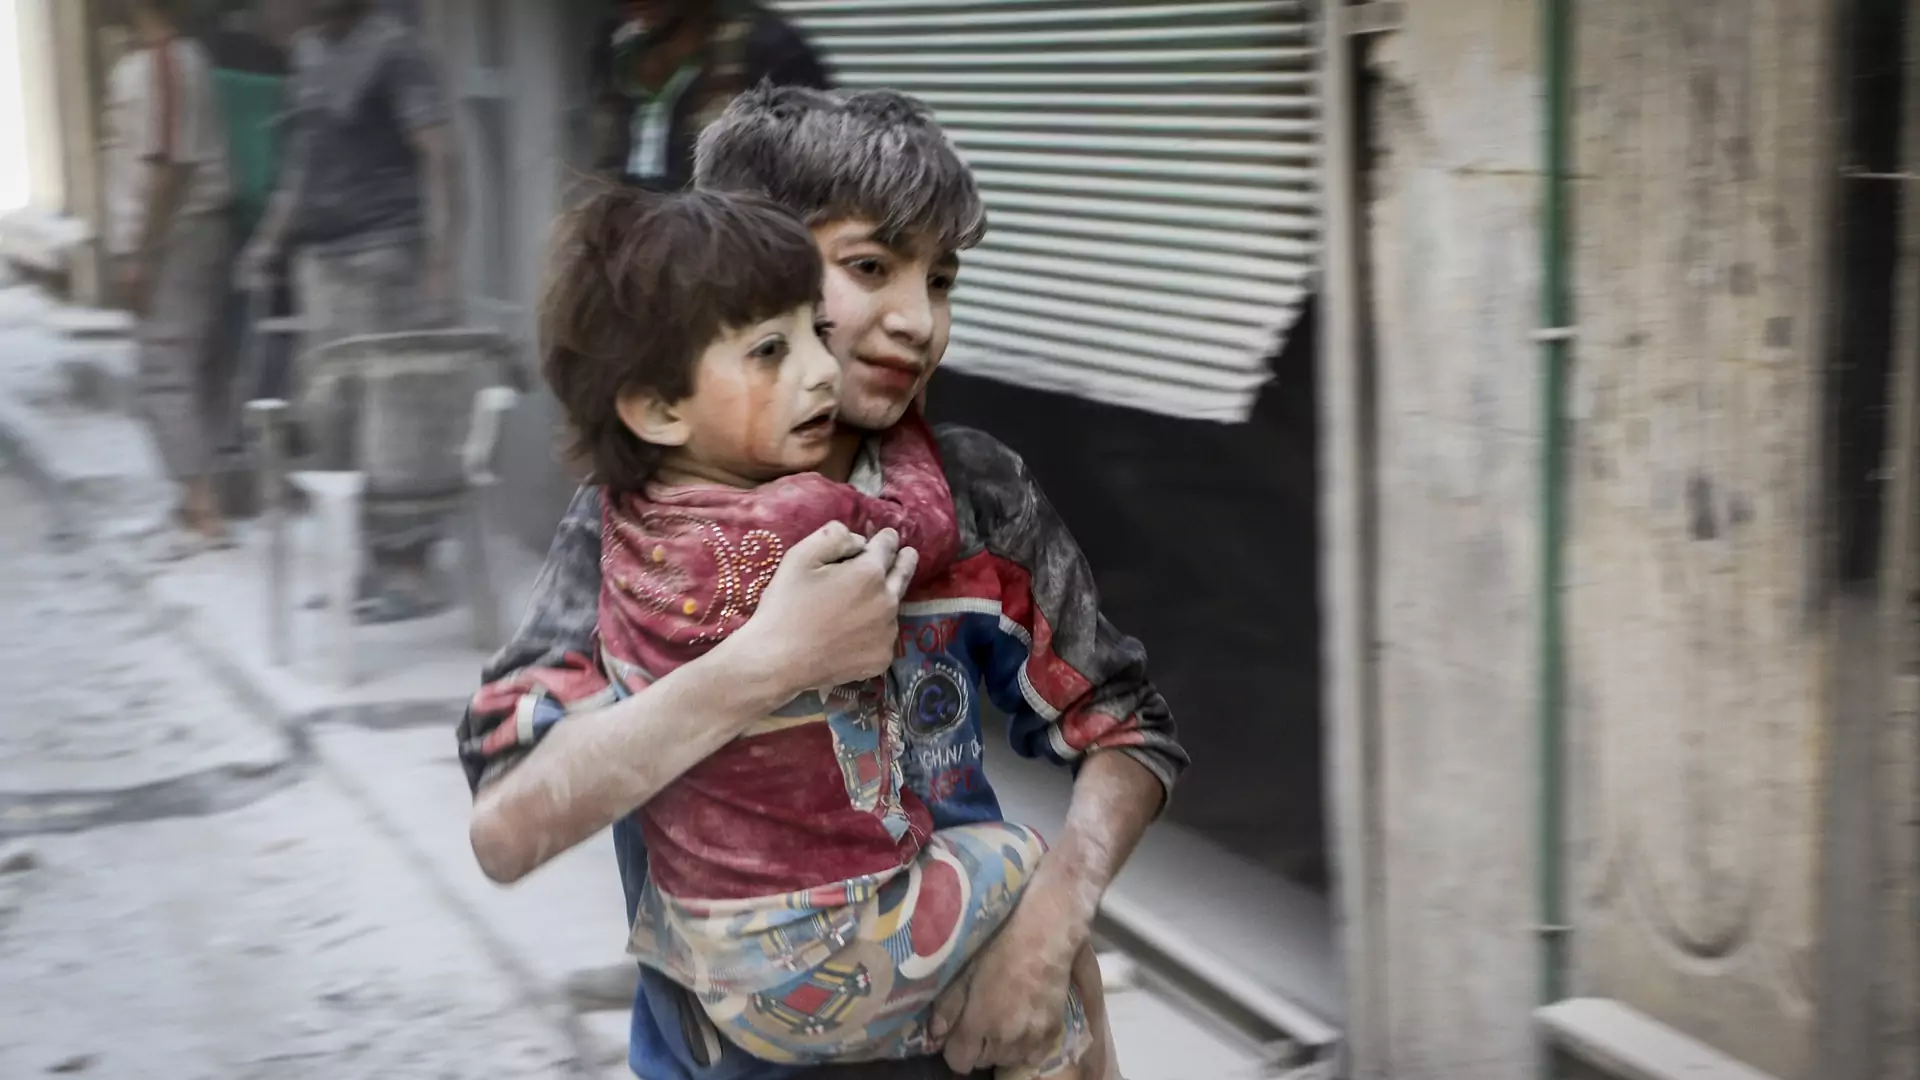 "Dzieci to tylko przykrywka". Wasze zdanie na temat sprawy 10 sierot z Aleppo